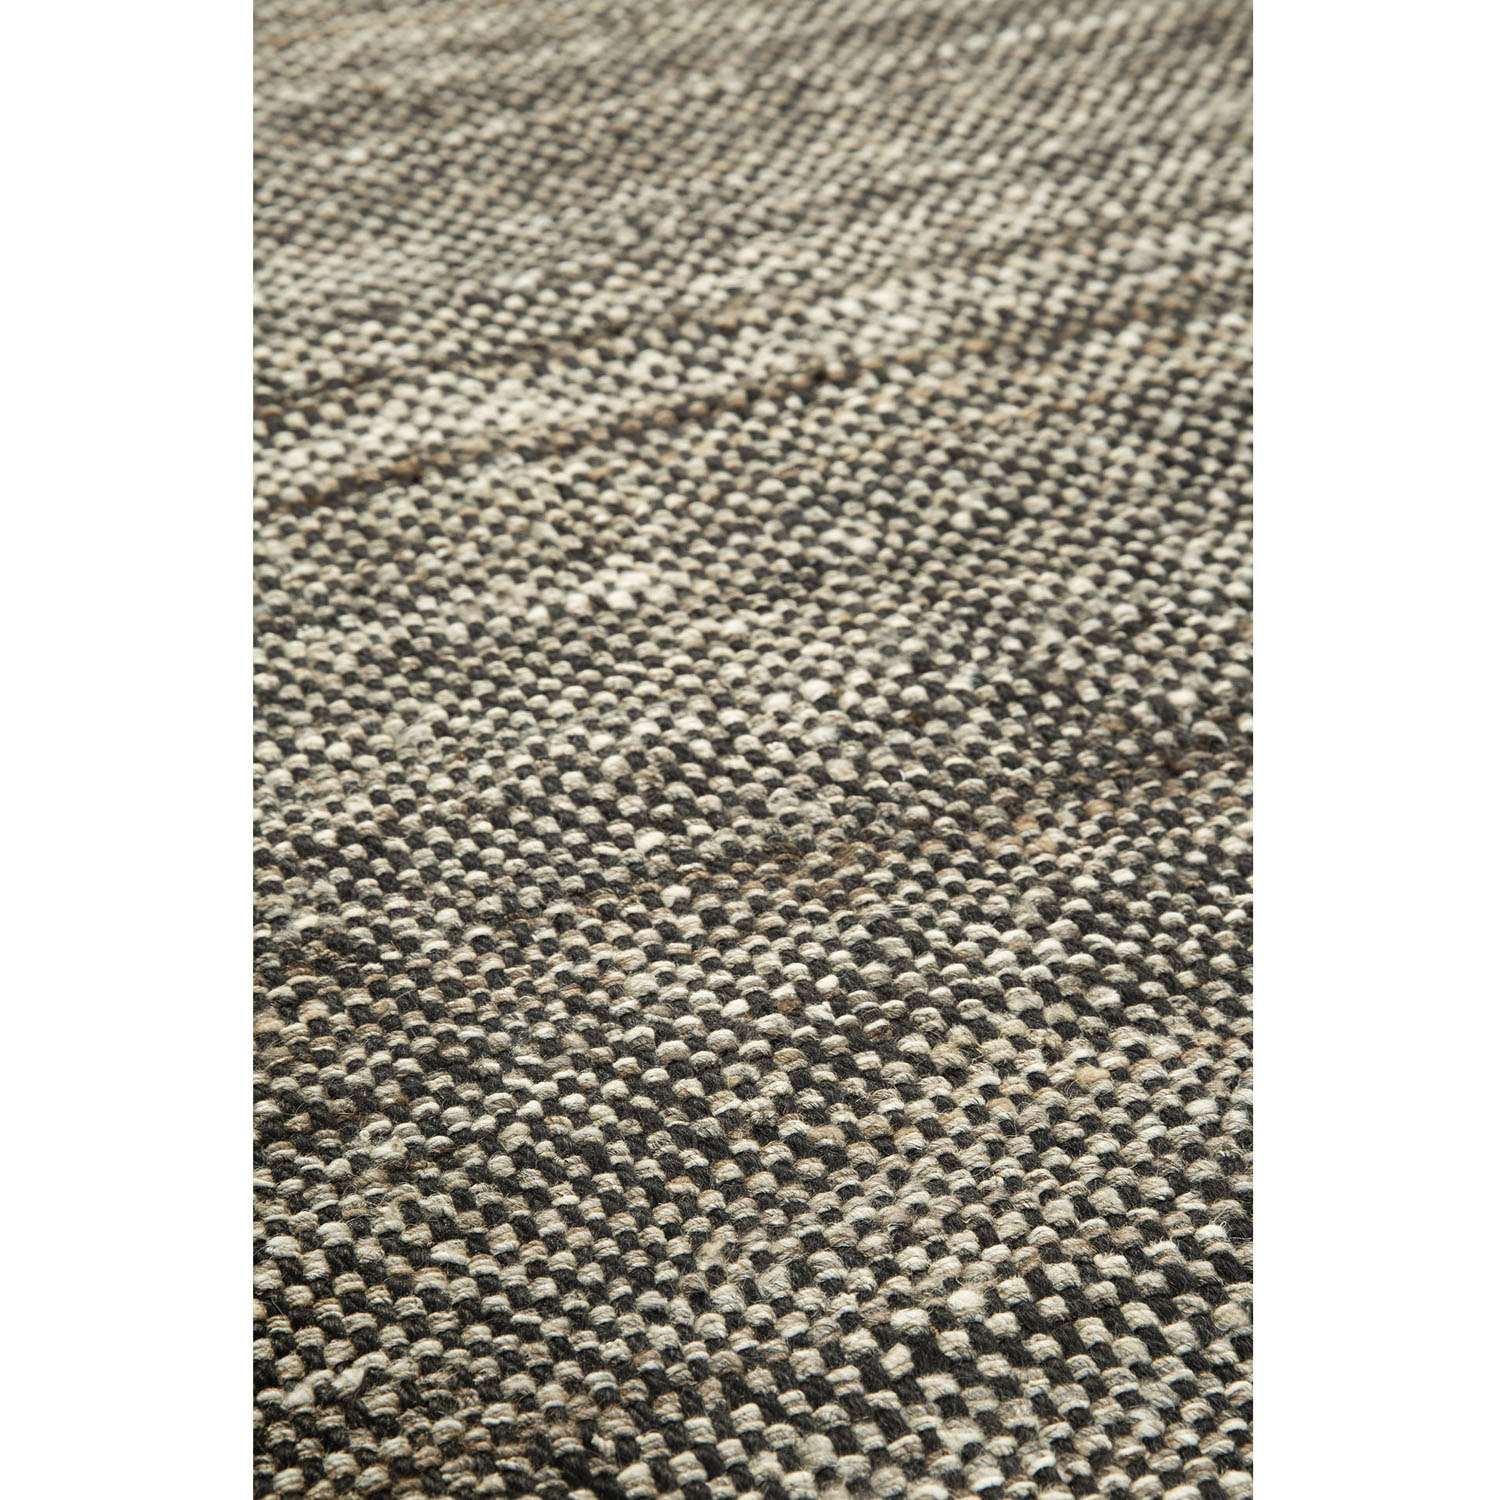 Checked Kilim-Teppich Natur 100 % handgesponnene Wolle 21727